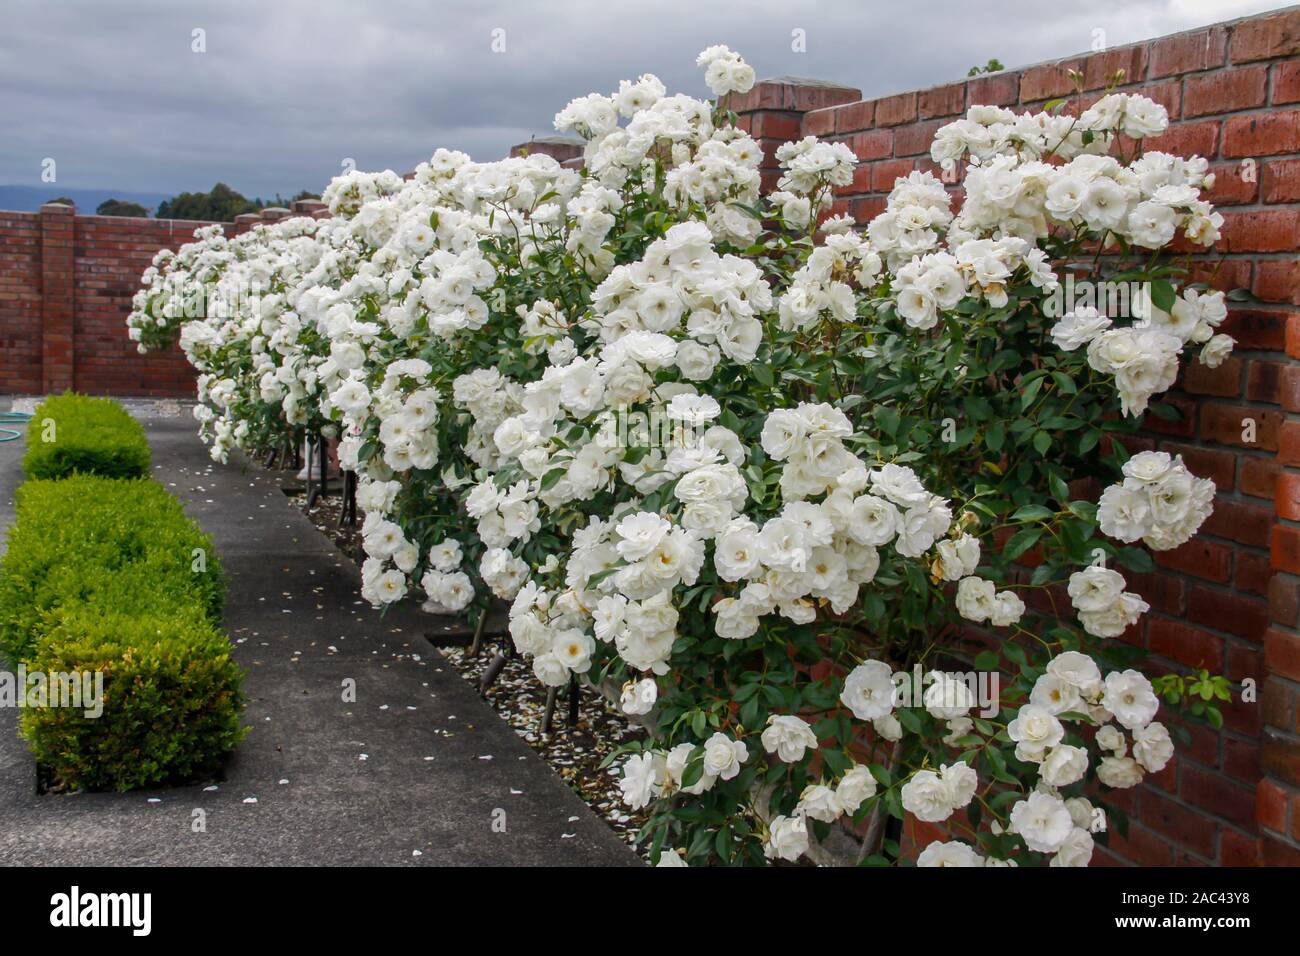 Reihe von schönen Eisberg standard Rose in voller Blüte in unserem Garten zu Hause mit einem roten Mauer an der Rückseite und ein buxus Hecke an der Vorderseite Stockfoto